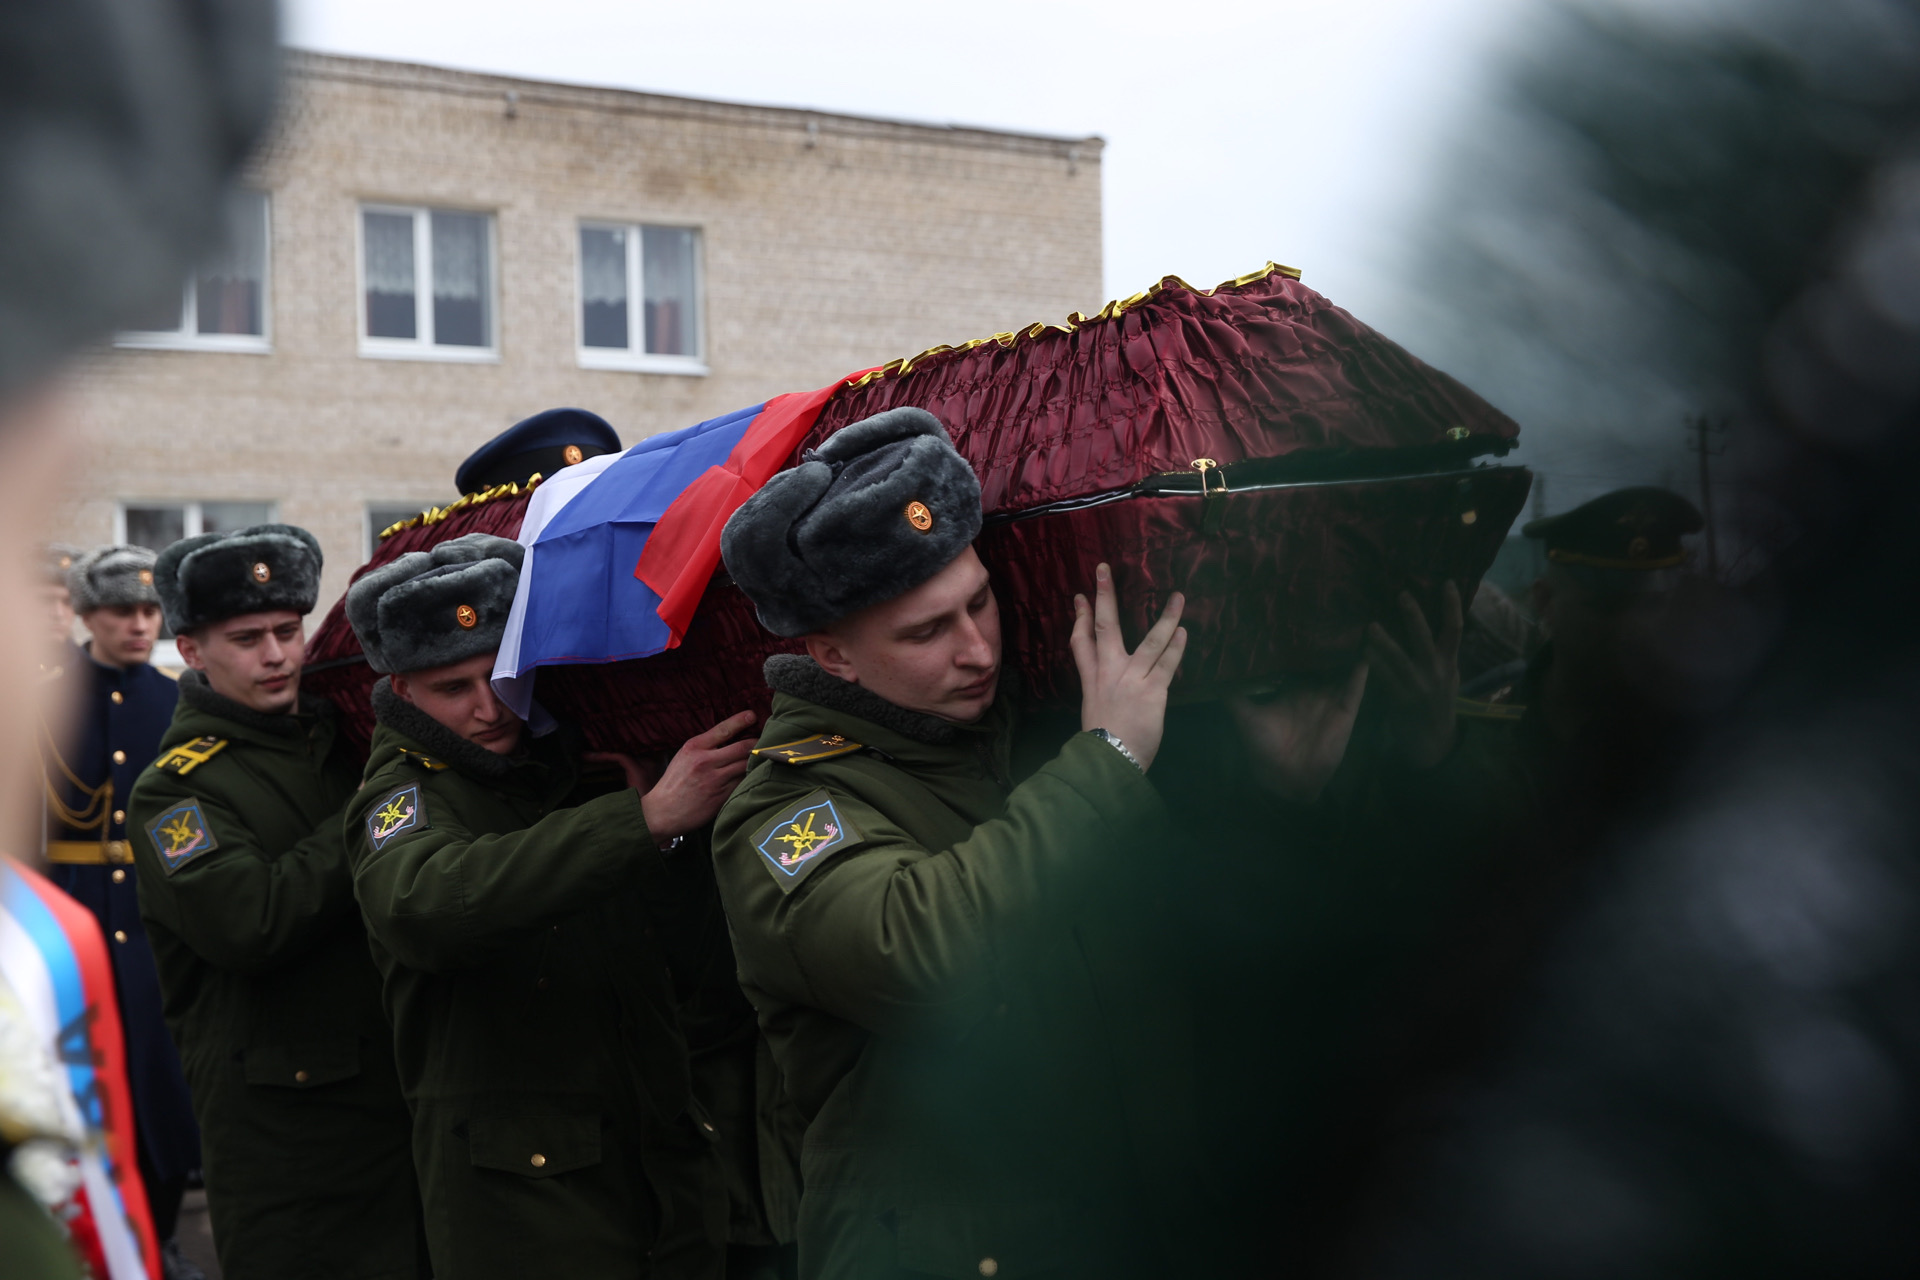 Прощание в твери с экипажем ил. В Твери простились с погибшими. Прощание с погибшими на Украине.